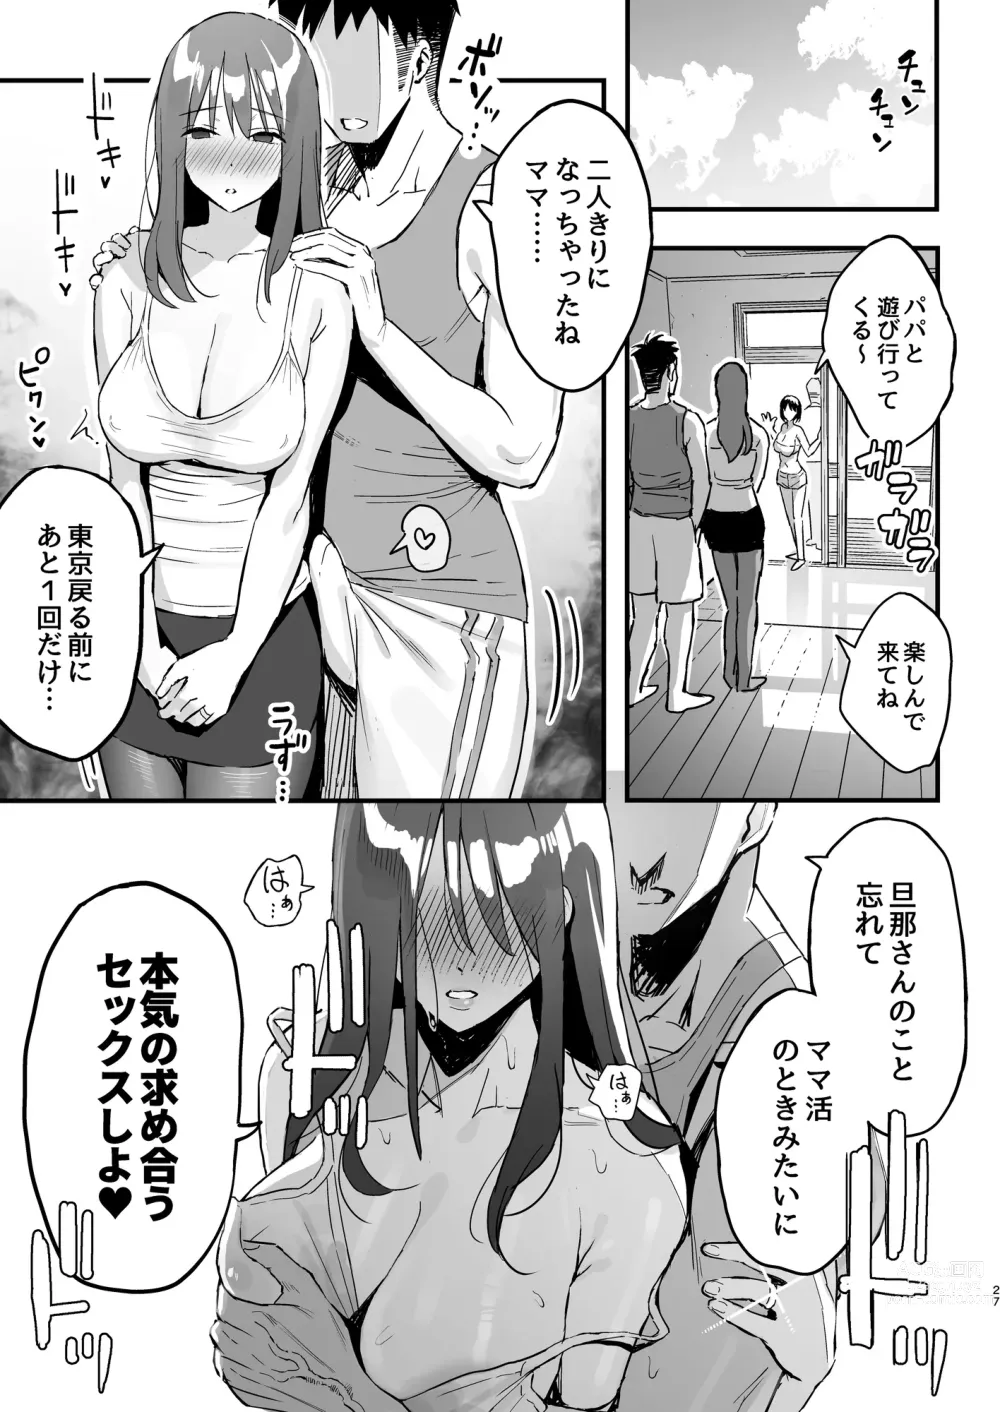 Page 26 of doujinshi Kanojo no mama wa mama katsu no mamadatta.